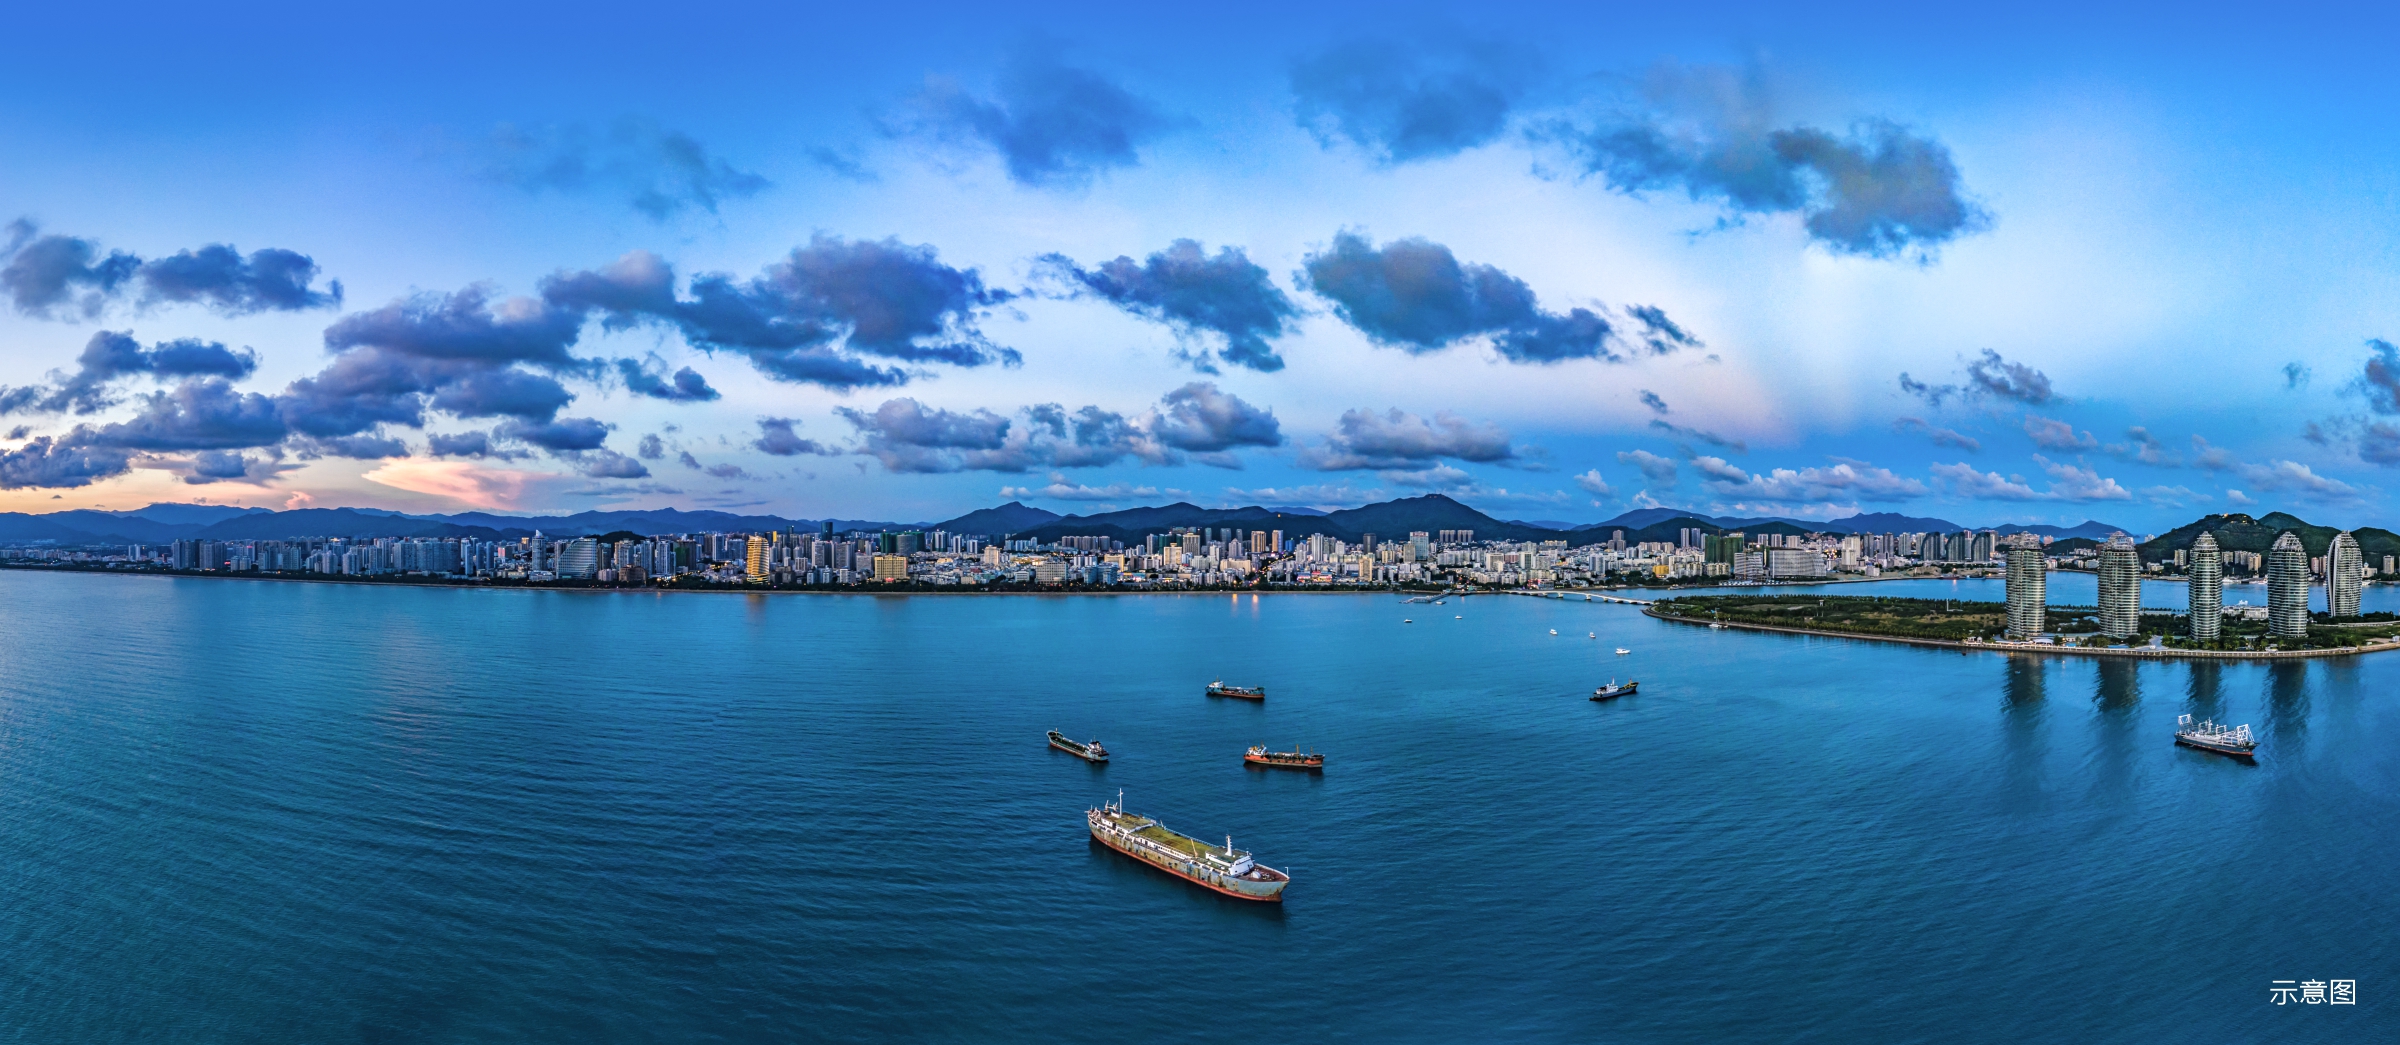 海南自由贸易港建设实景图